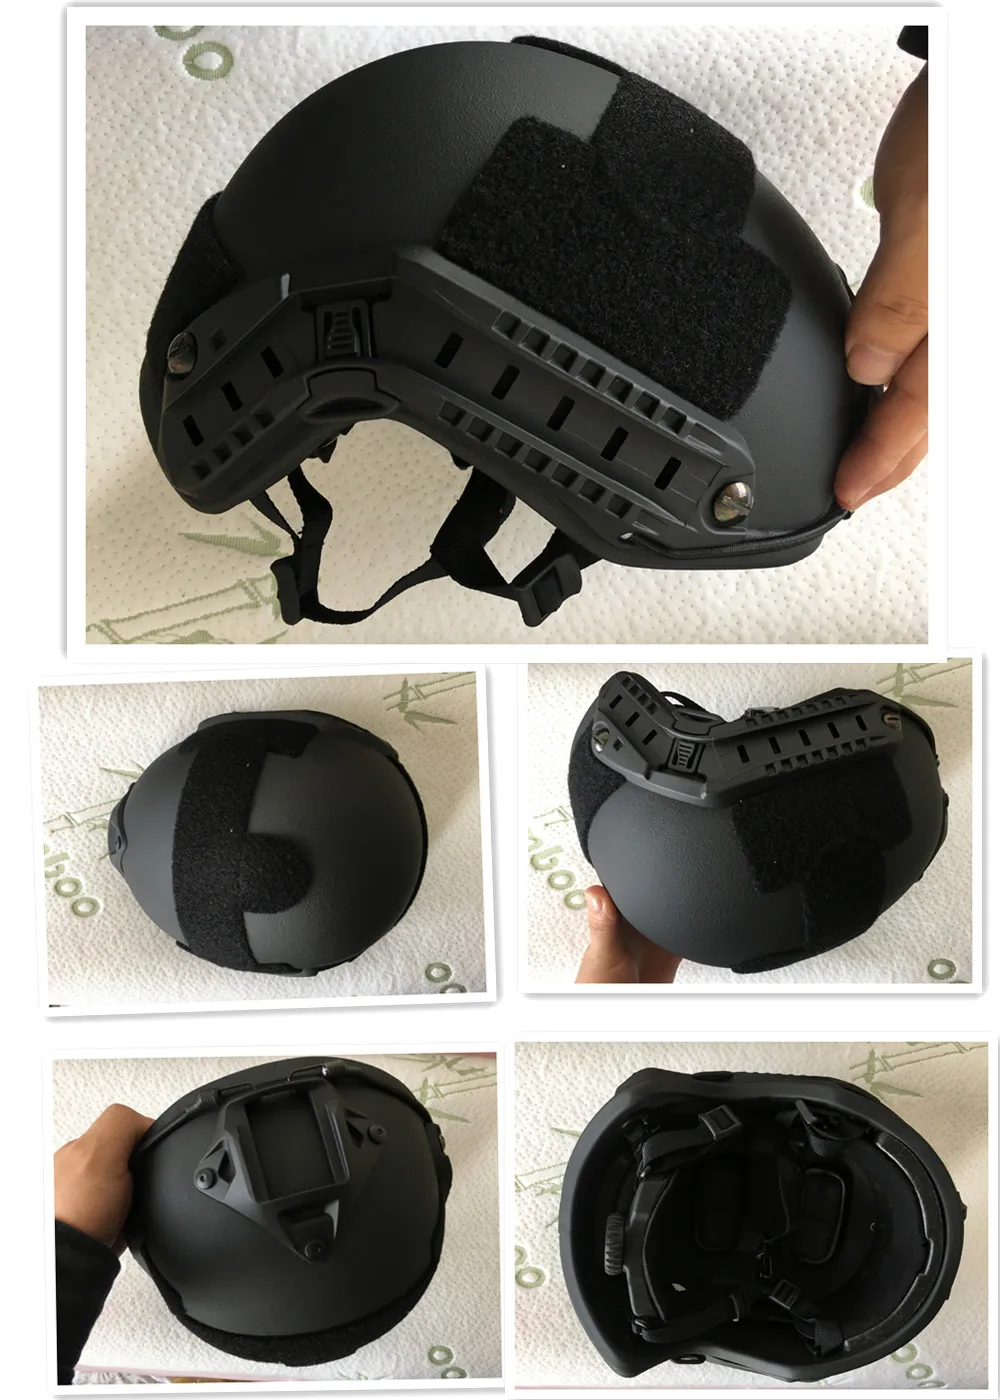 NIJ IIIA Быстрый пуленепробиваемый шлем армии США шлем NIJ Стандартный пуленепробиваемый шлем военные тактические шлемы с отчетом